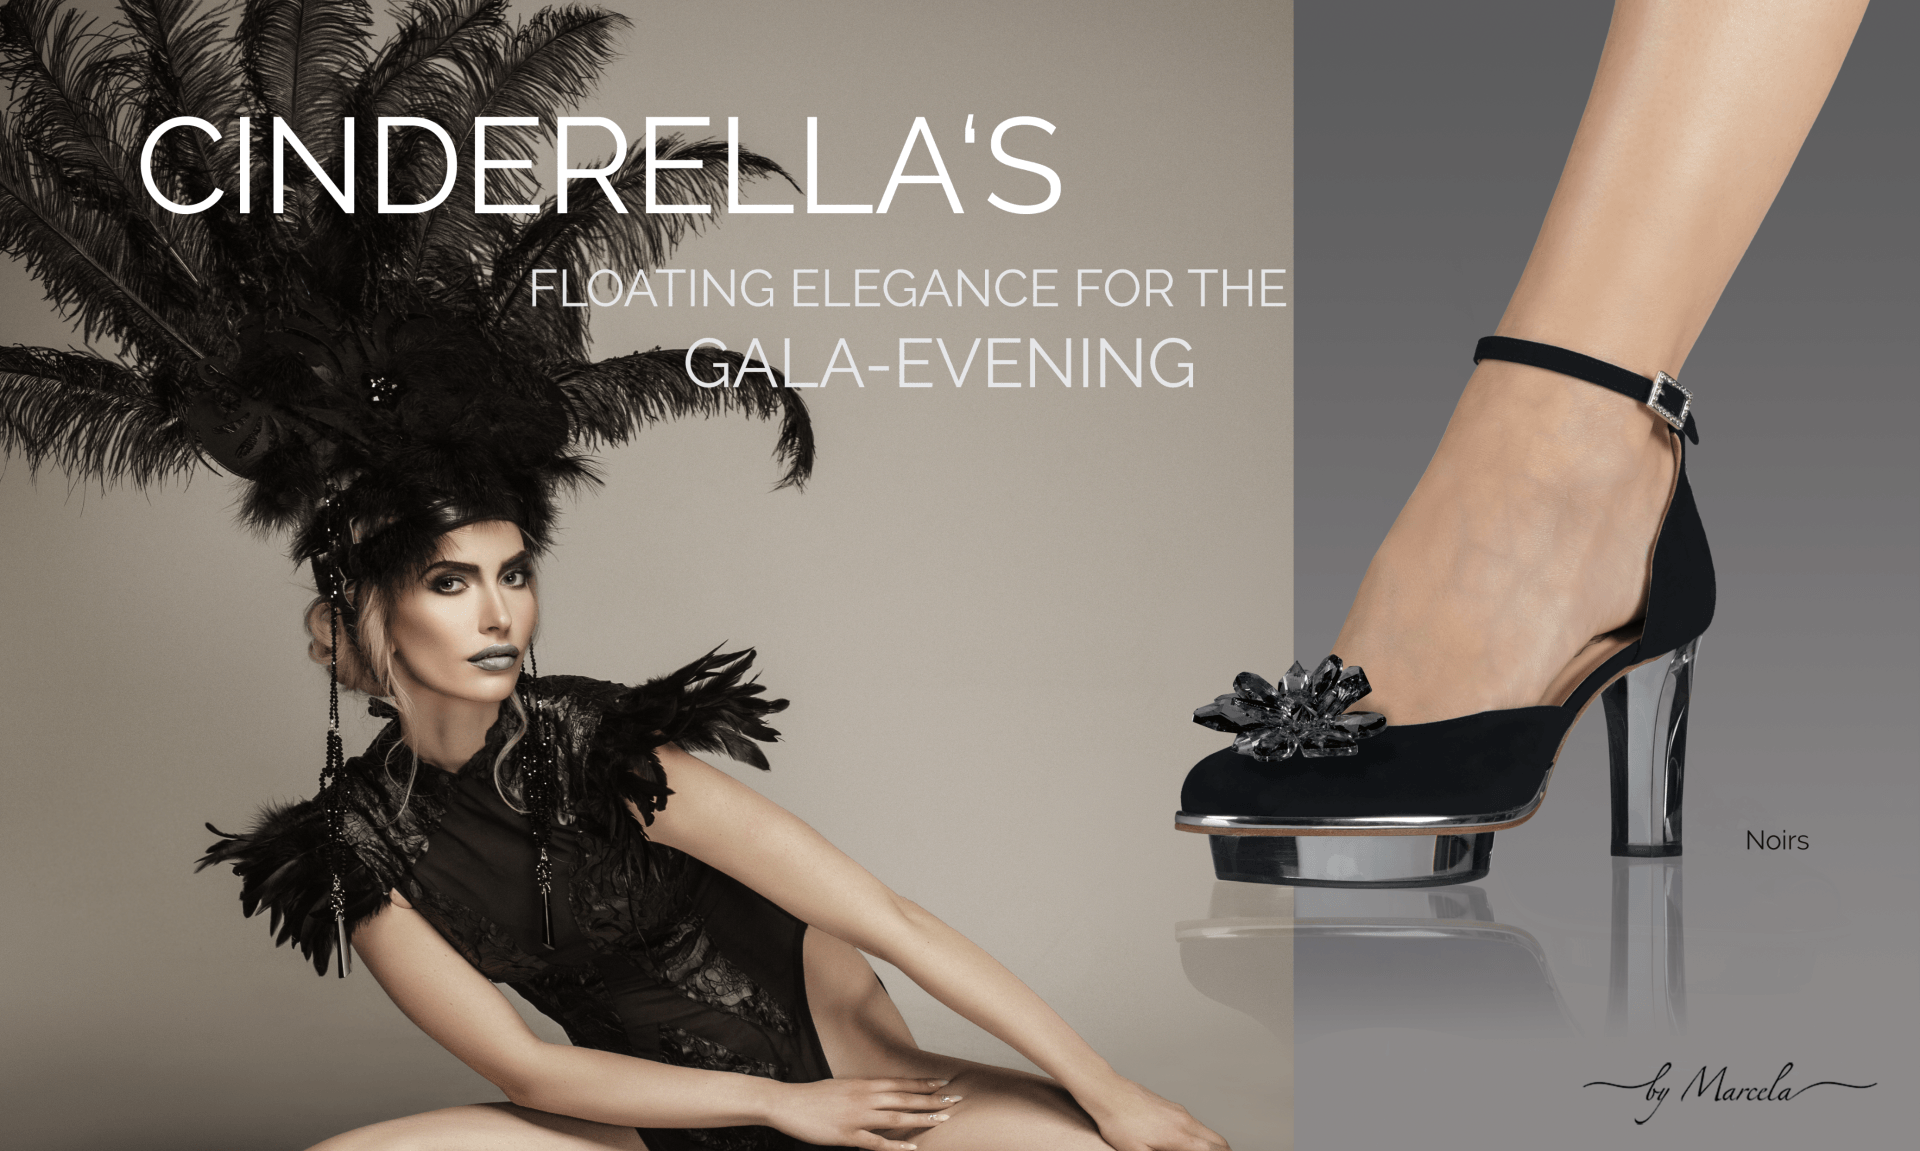 Schwarze Cinderella Abend-Schuhe mit transparentem high heel namens Noirs